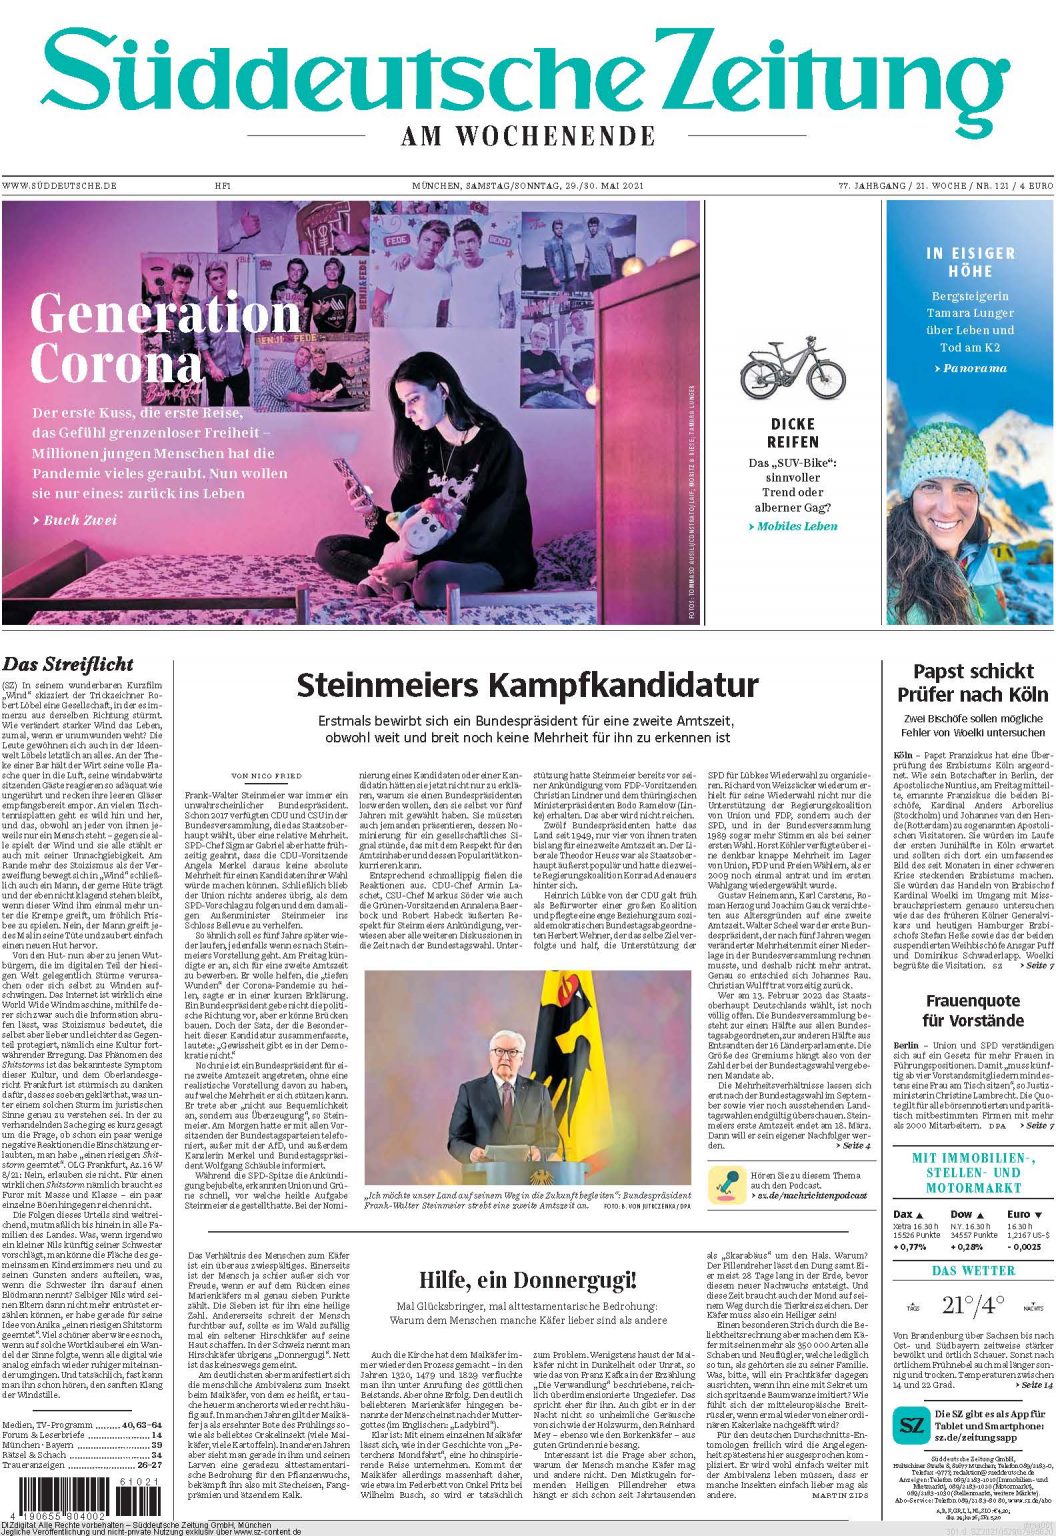 Süddeutsche Zeitung, May 2021